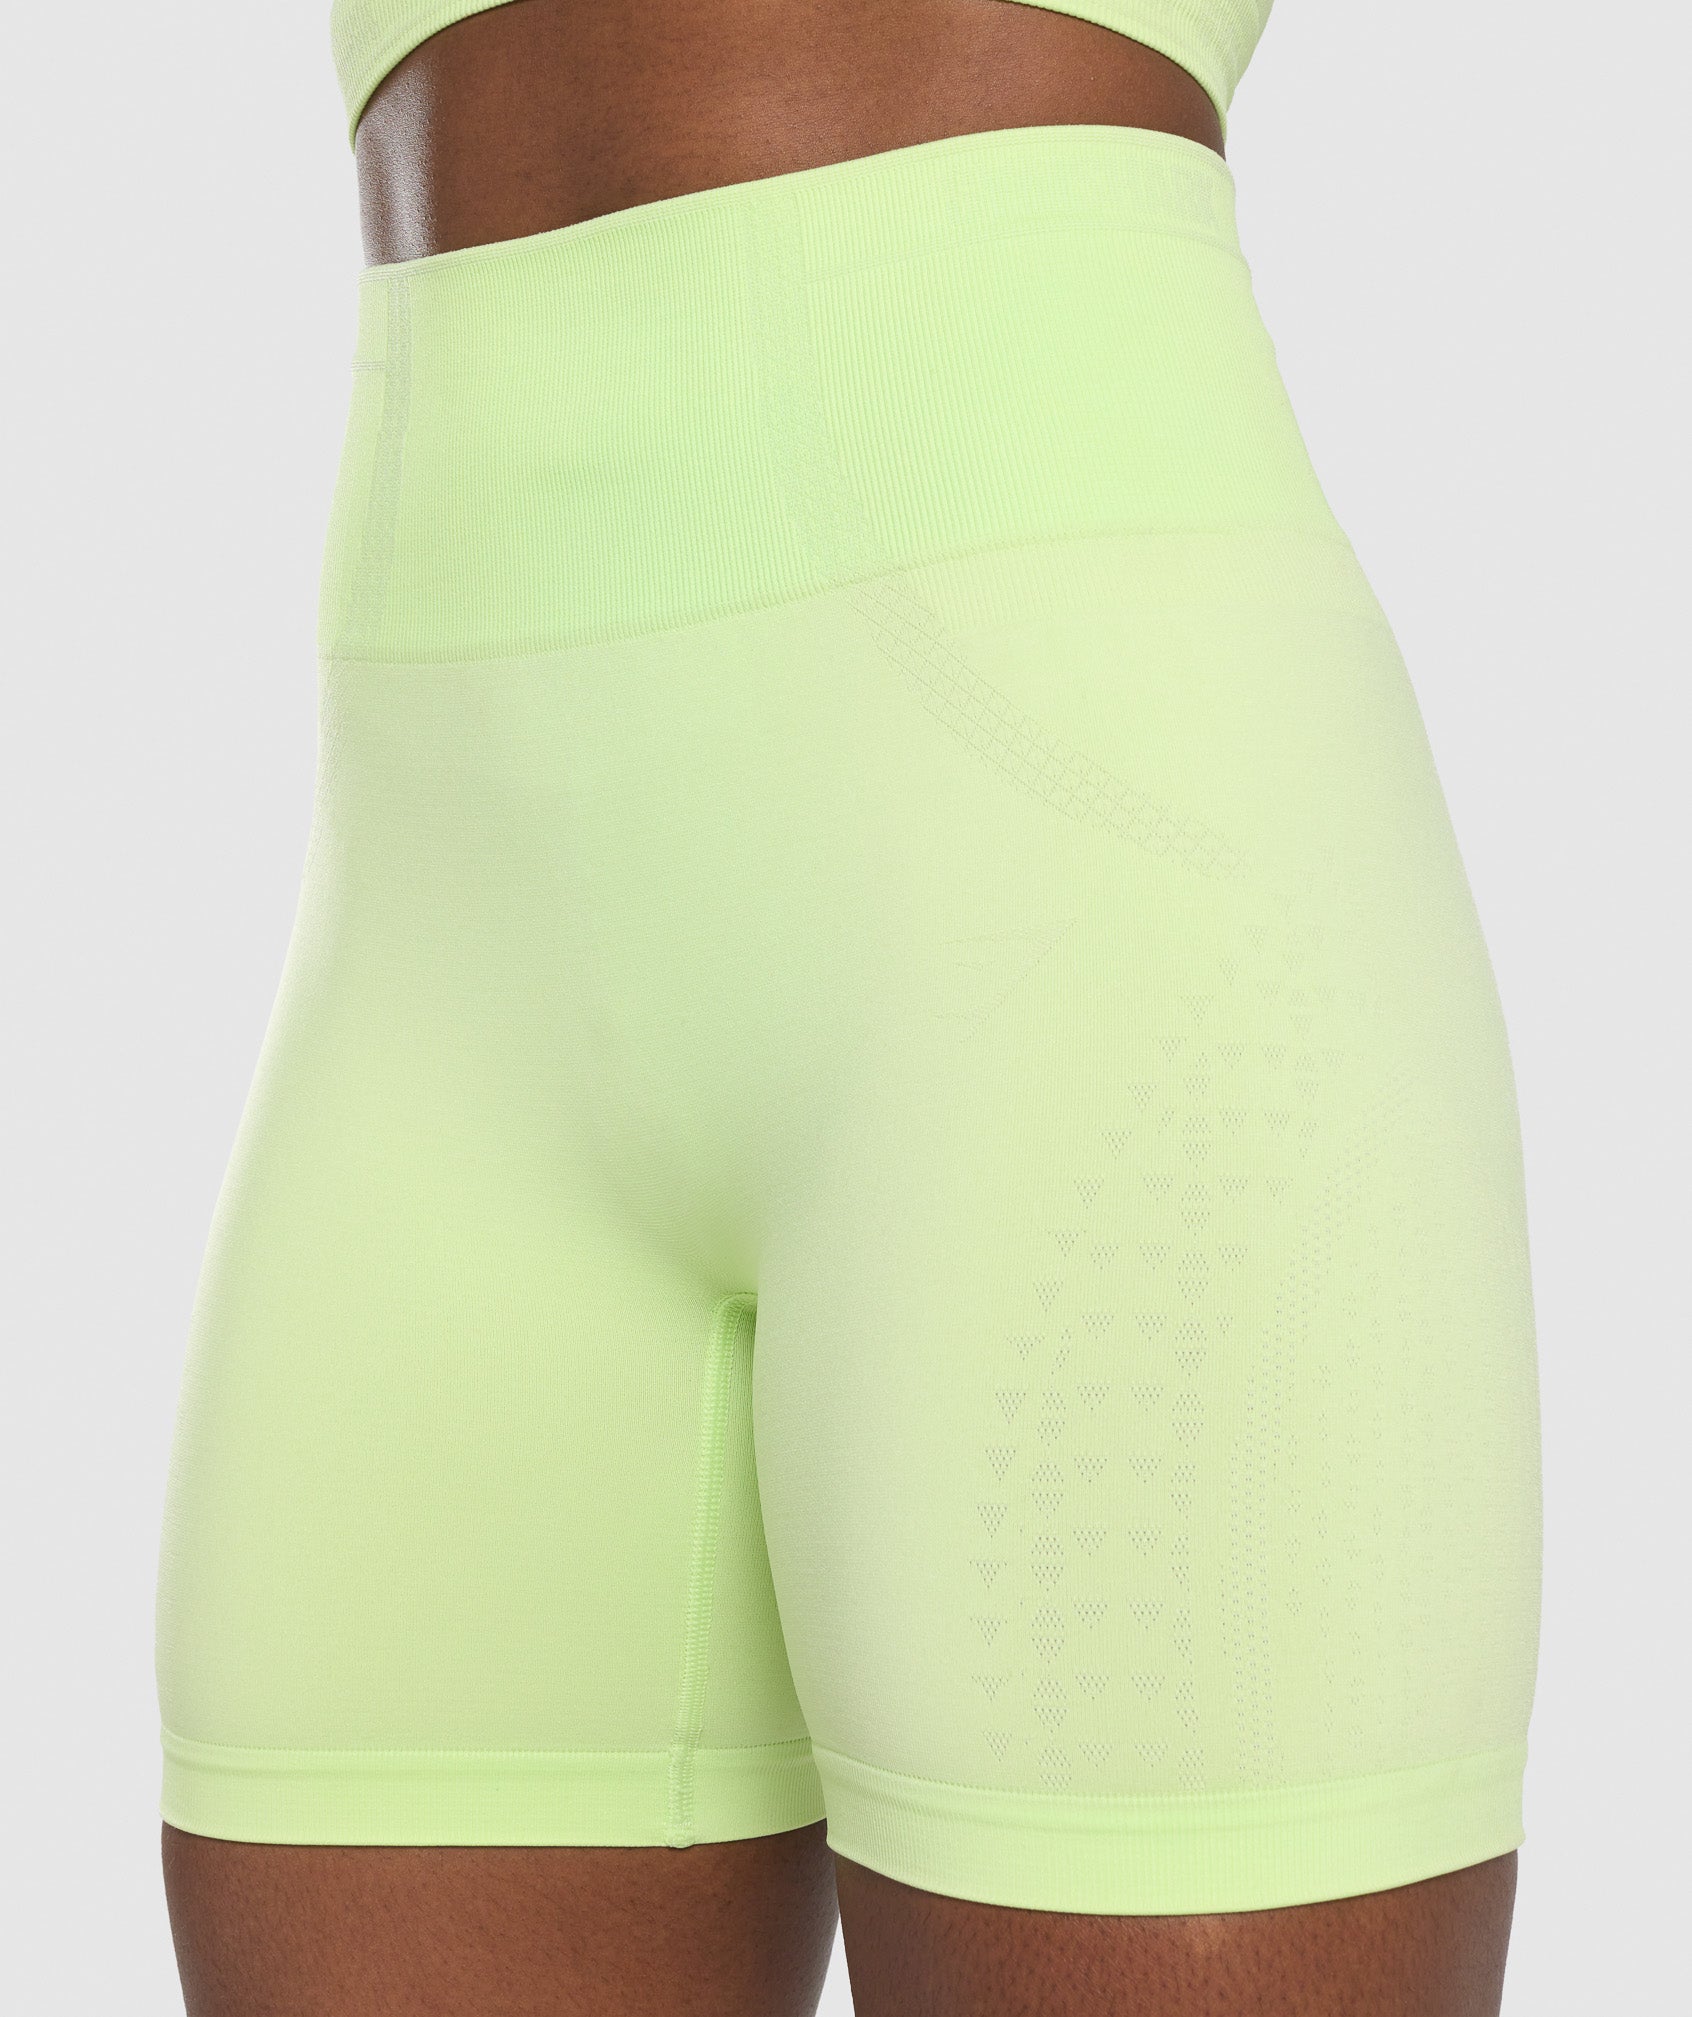 Gymshark Apex Seamless Shorts - Green/Light Green